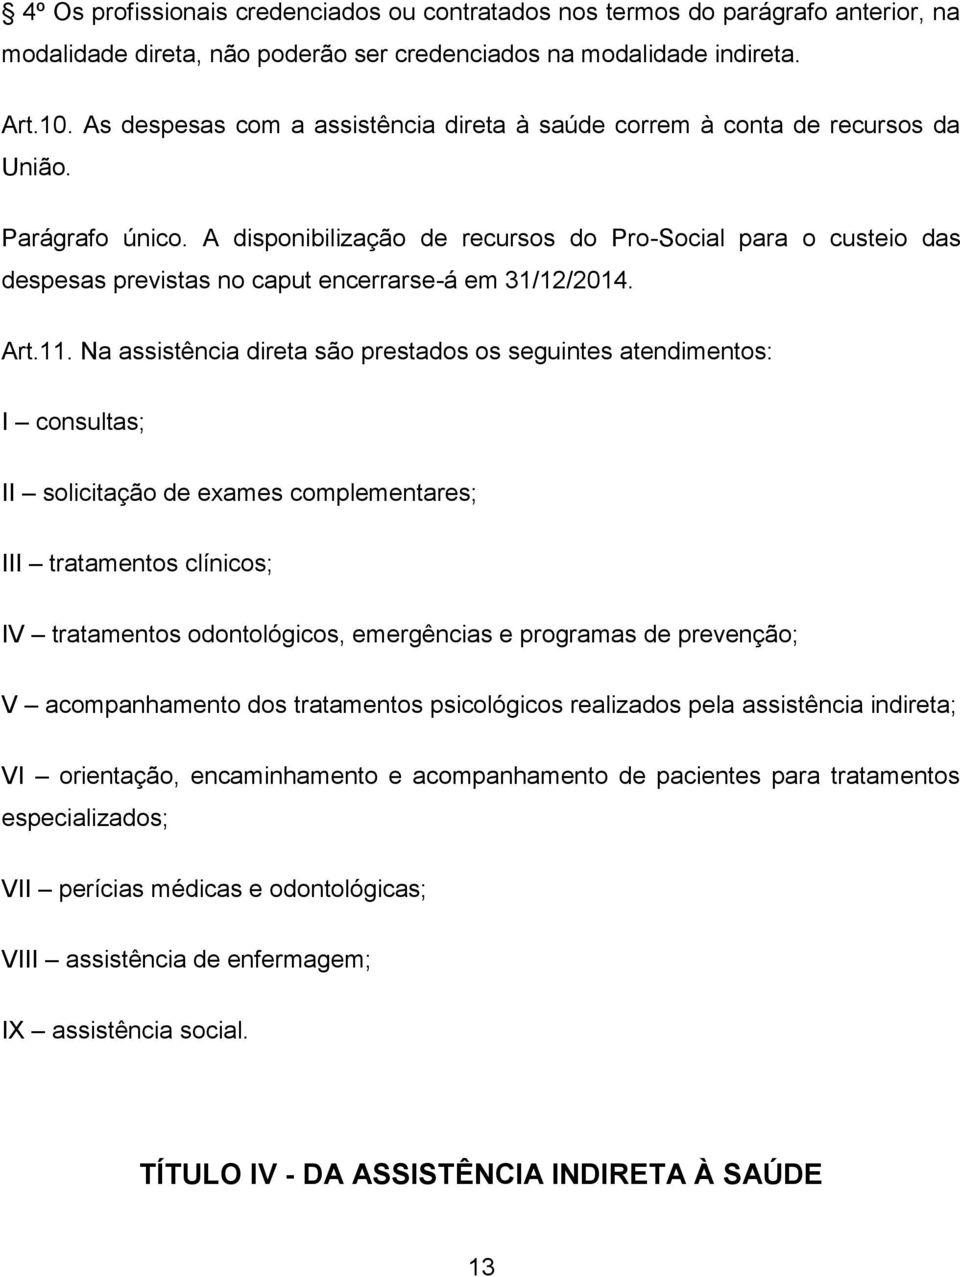 A disponibilização de recursos do Pro-Social para o custeio das despesas previstas no caput encerrarse-á em 31/12/2014. Art.11.